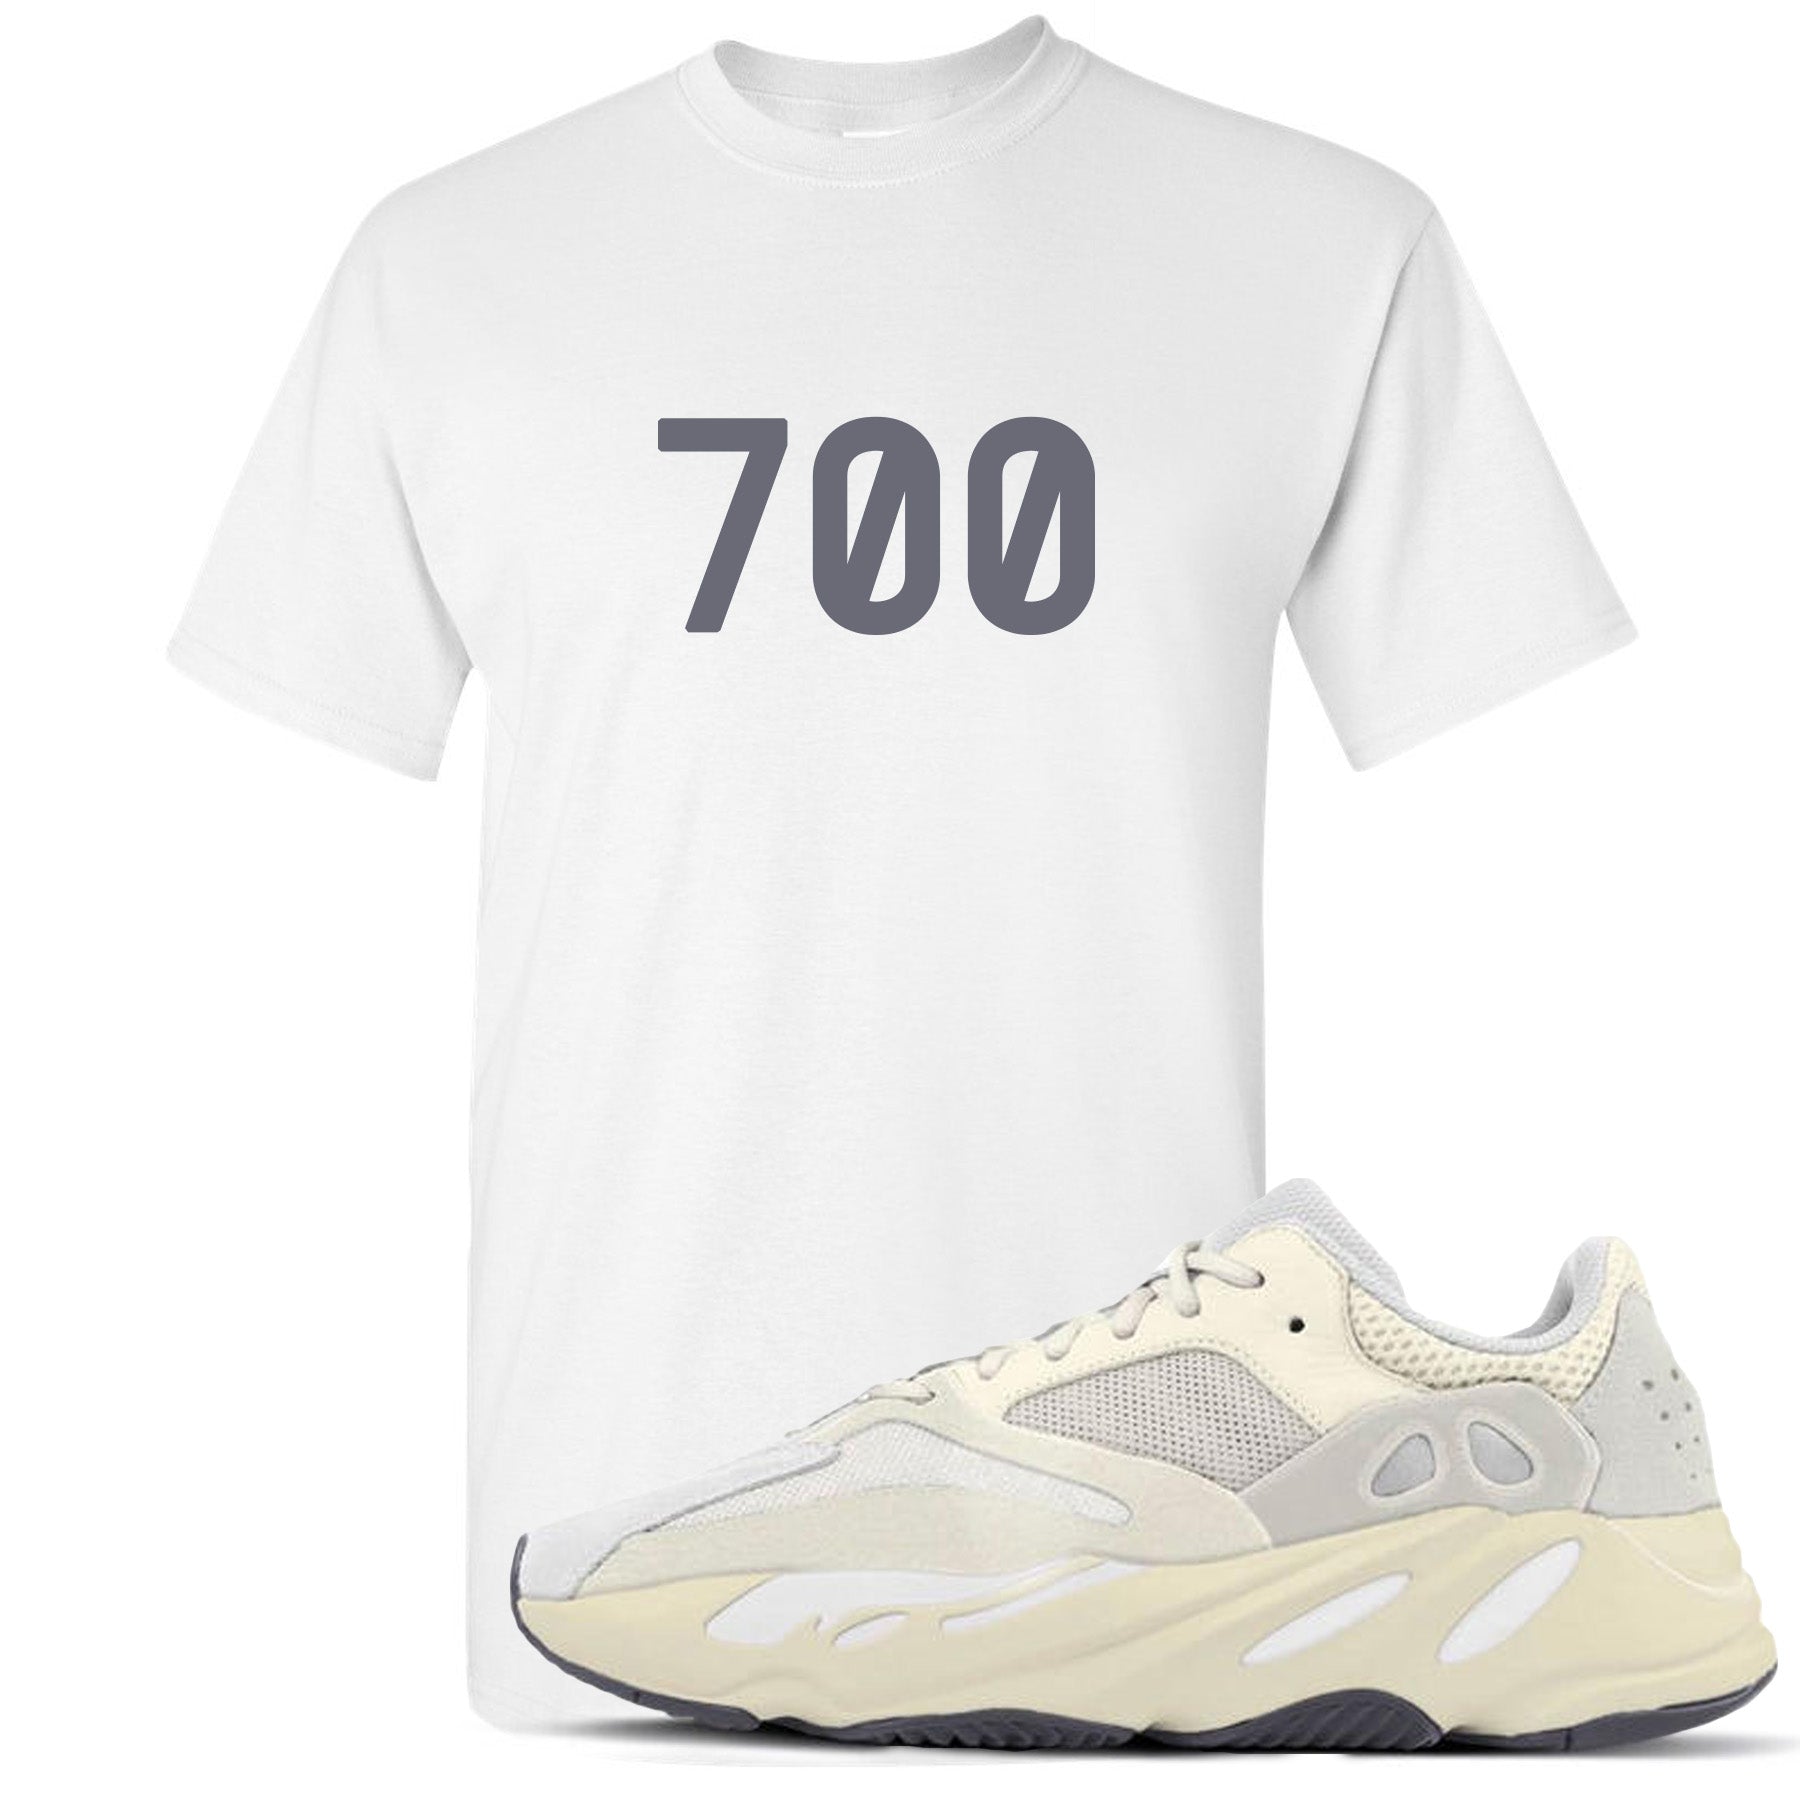 yeezy boost 700 shirt